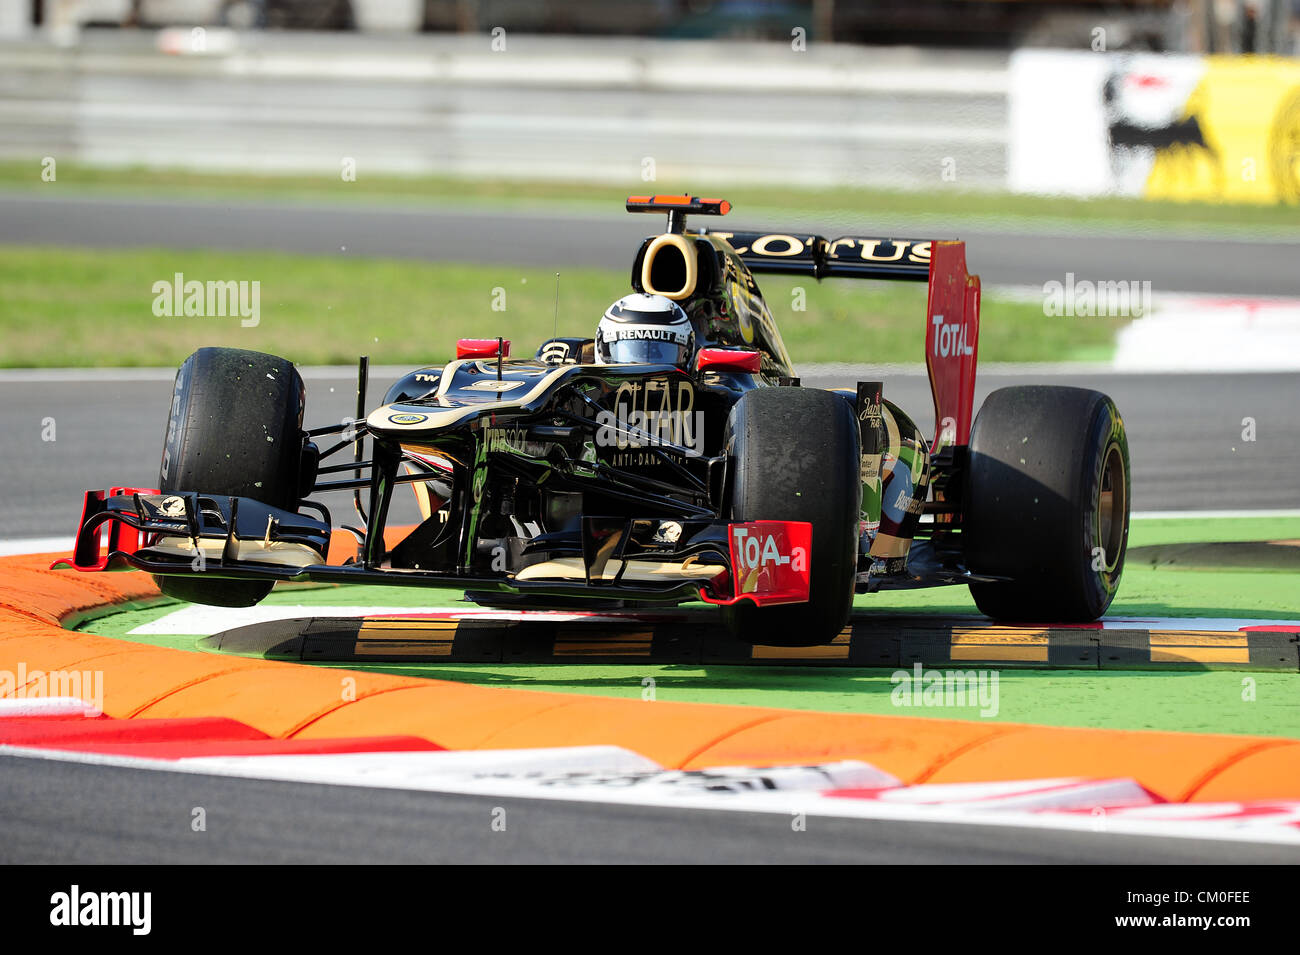 Monza, Italie. 8 septembre 2012. Kimi Raikkonen de Lotus en action lors de la journée de qualification GP d'Italie 2012. Banque D'Images